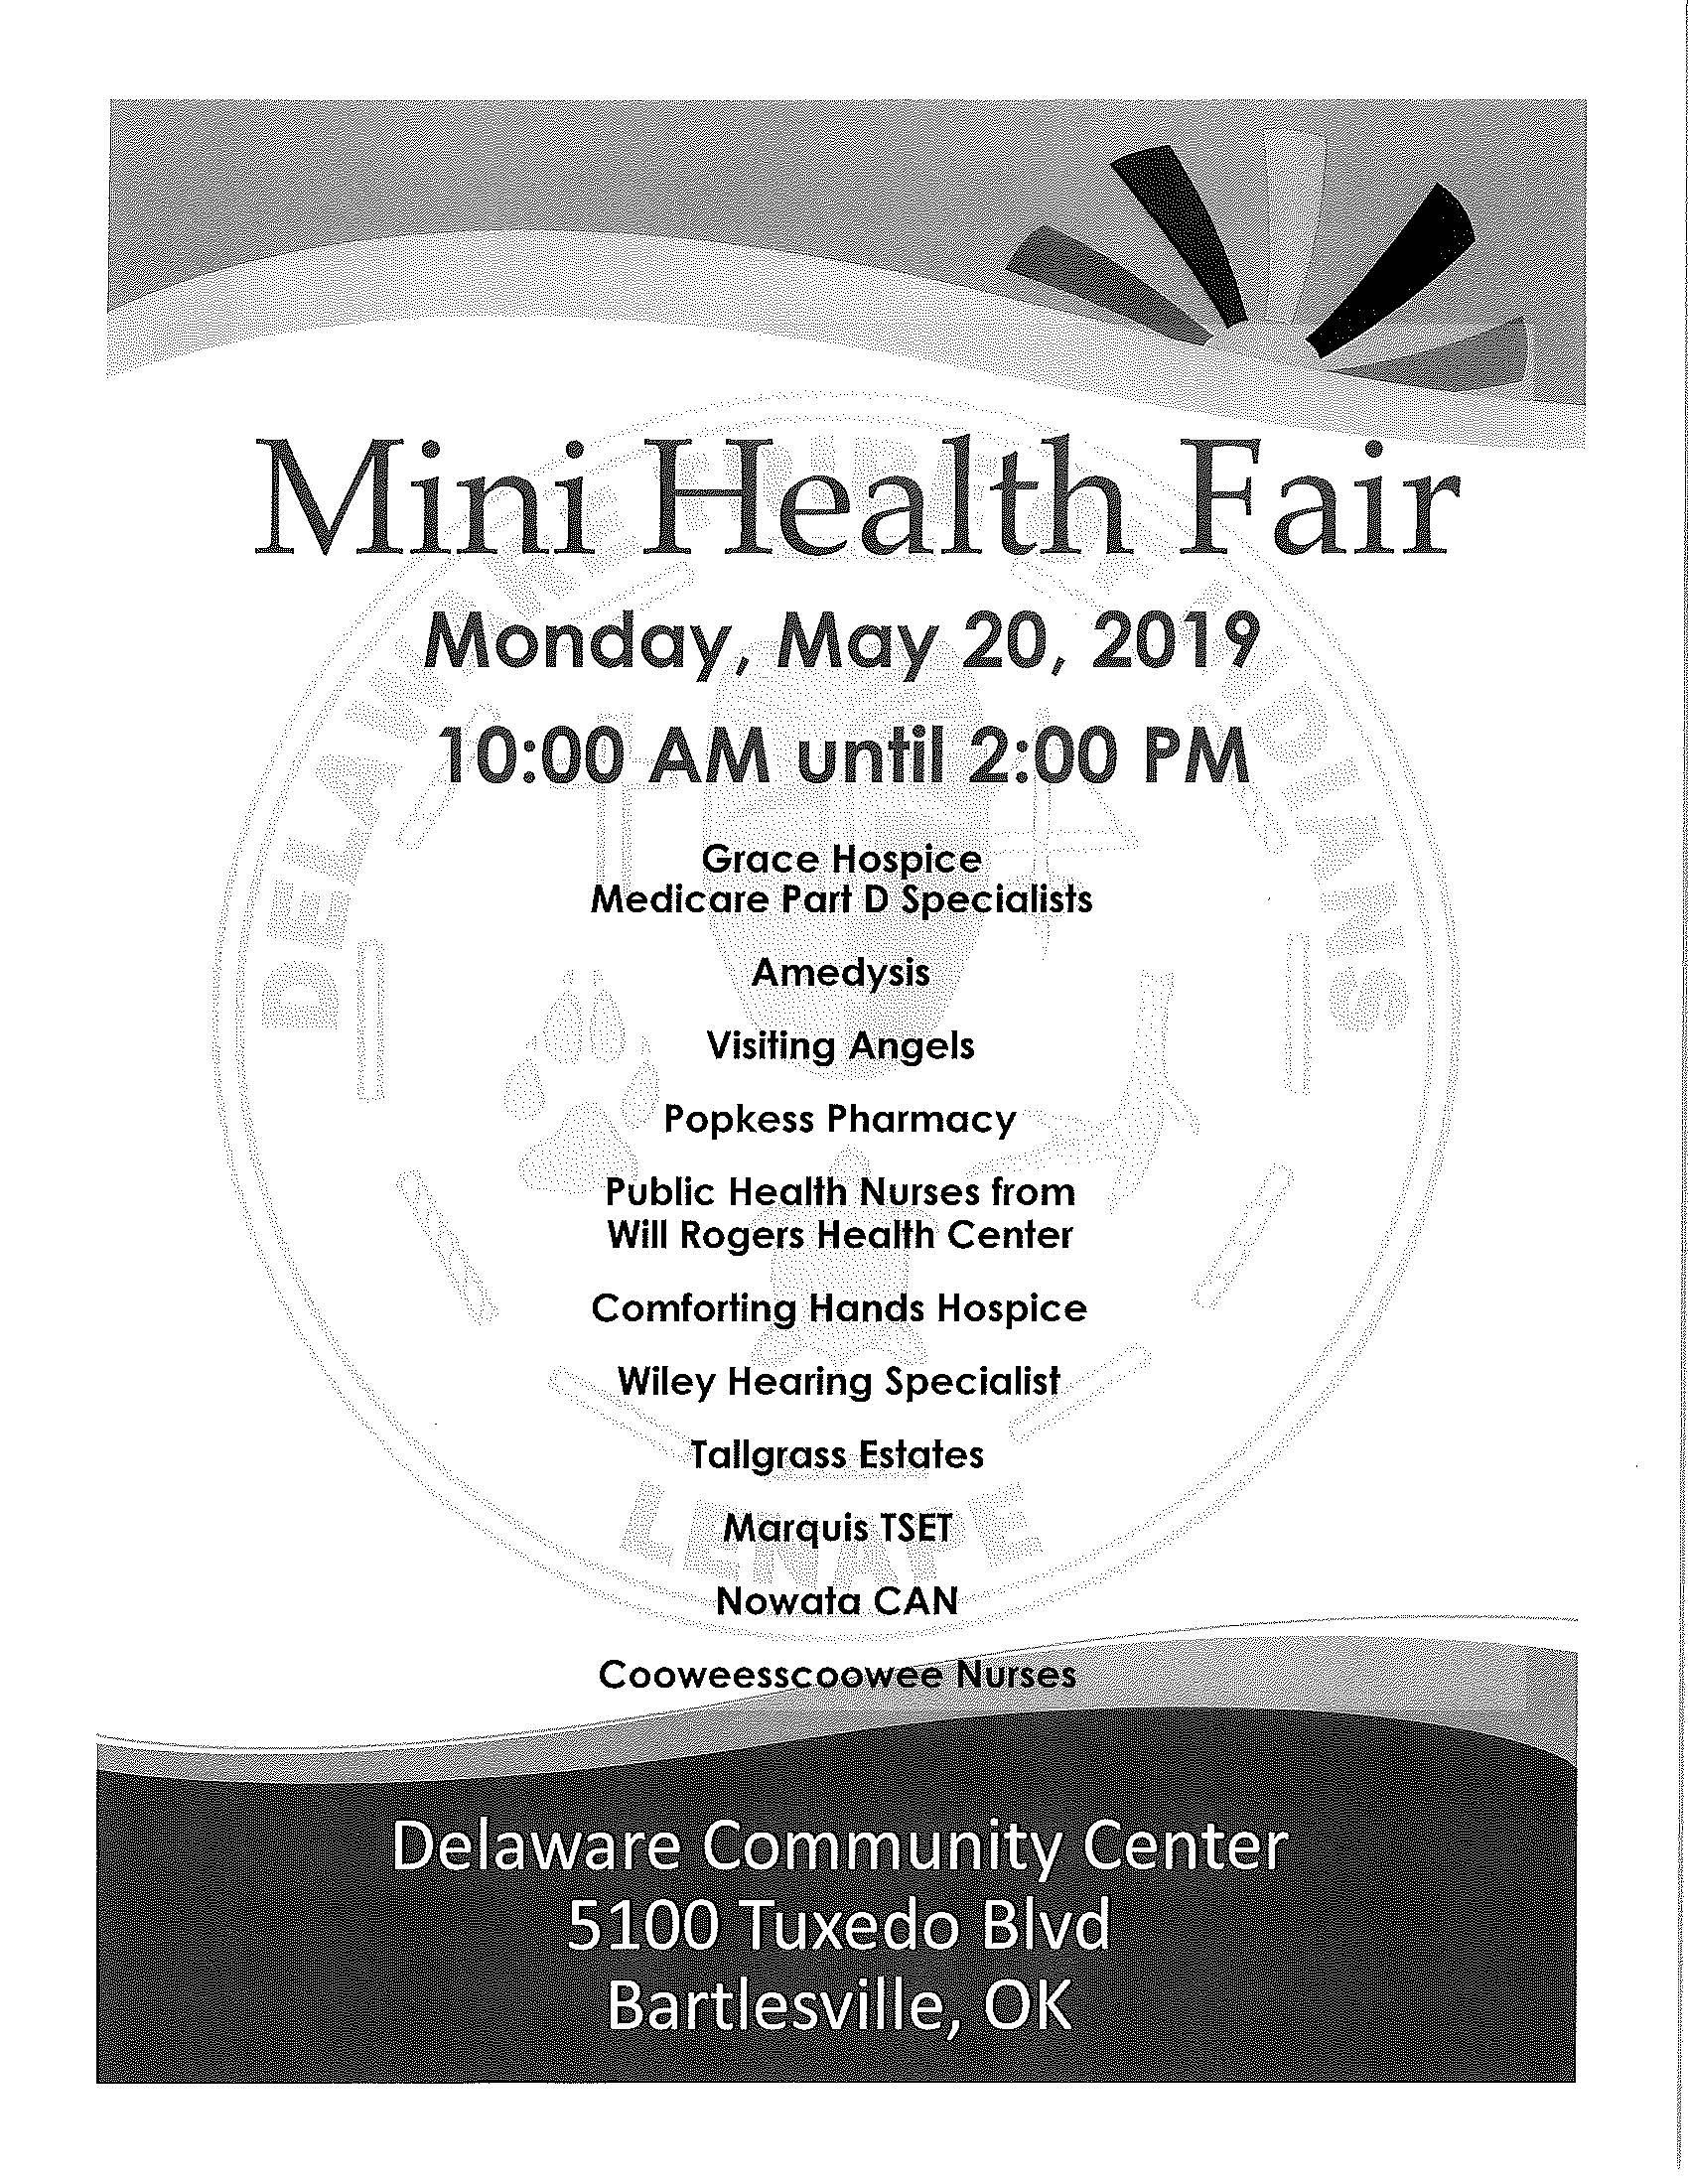 Mini Health Fair Flyer